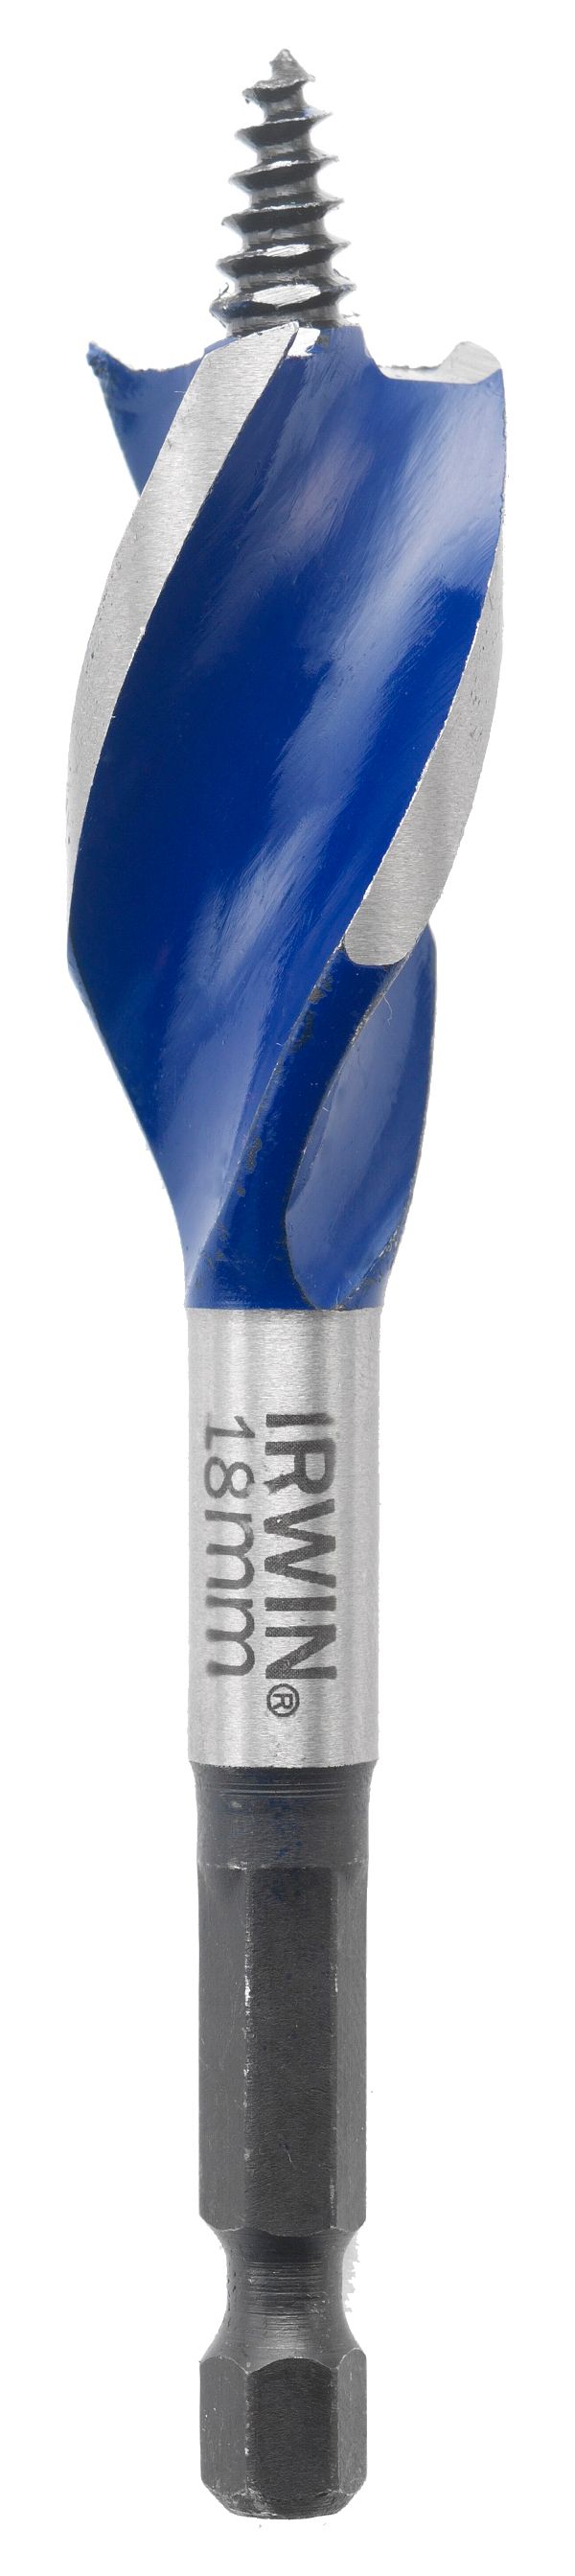 Irwin 10506621 Ir x 6 Blue Groove Speedbor Wood Bit - 159 x 18mm